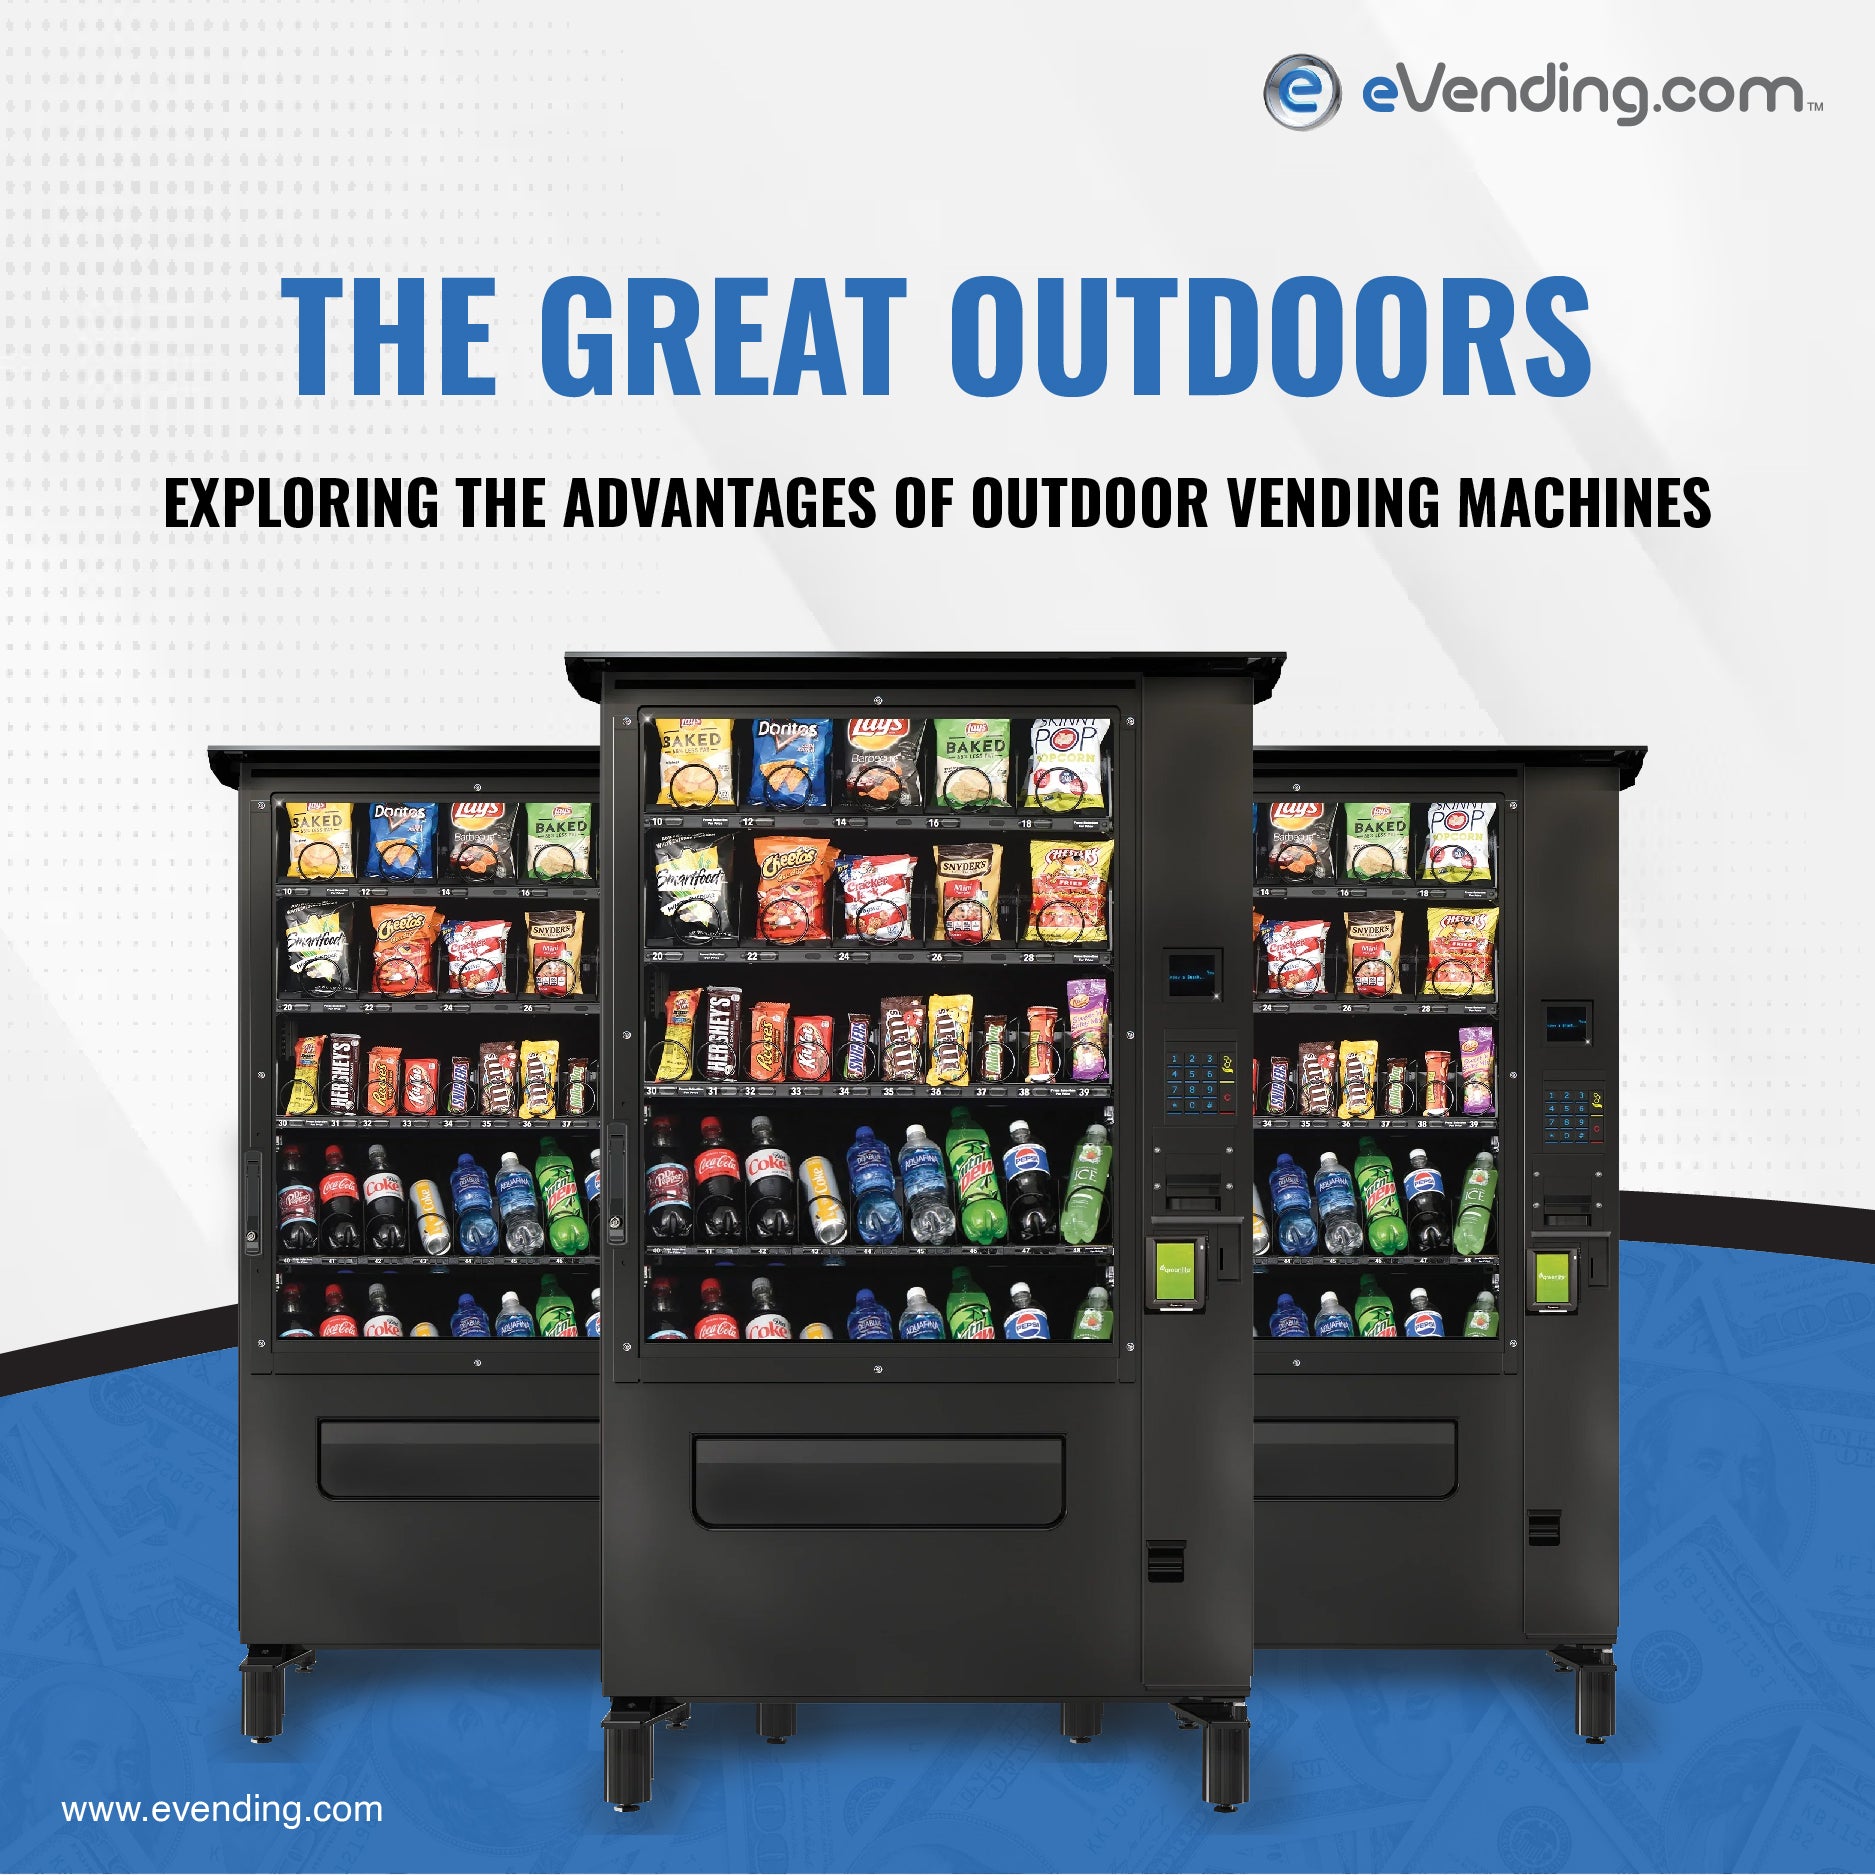 Outdoor vending machine benefits